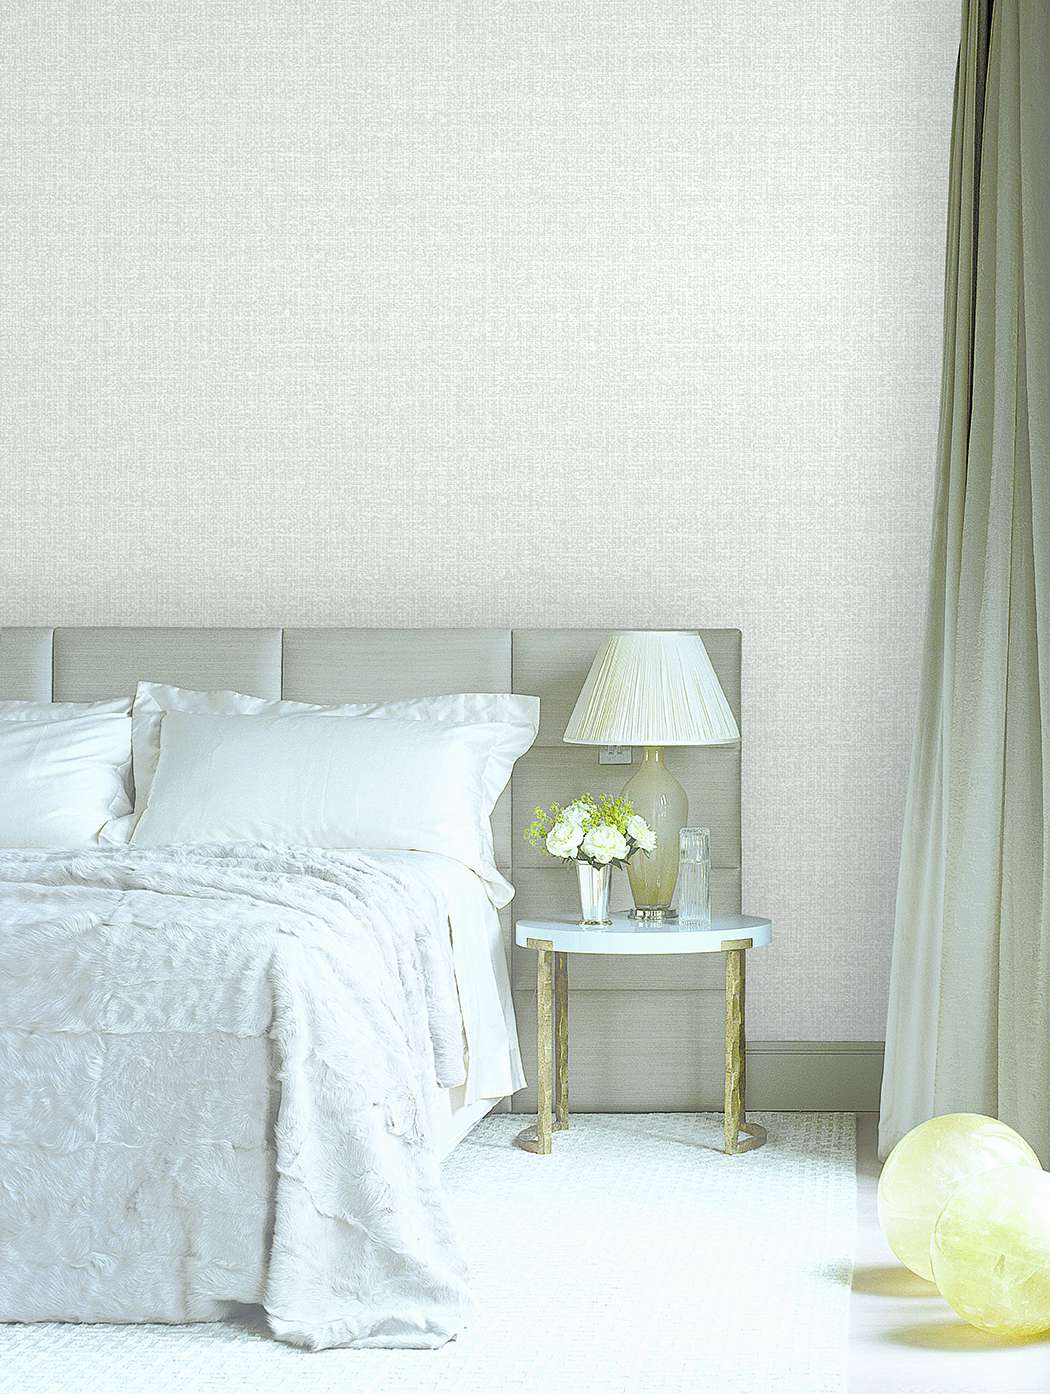 Không gian phòng ngủ nhỏ bé của bạn cần được cải thiện bằng cách thay đổi một chút. Chúng tôi giới thiệu giấy dán tường phòng ngủ đơn giản để tối ưu không gian và tạo cho bạn cảm giác thoải mái khi nghỉ ngơi. Cùng đến với chúng tôi để được tư vấn và chọn lựa.